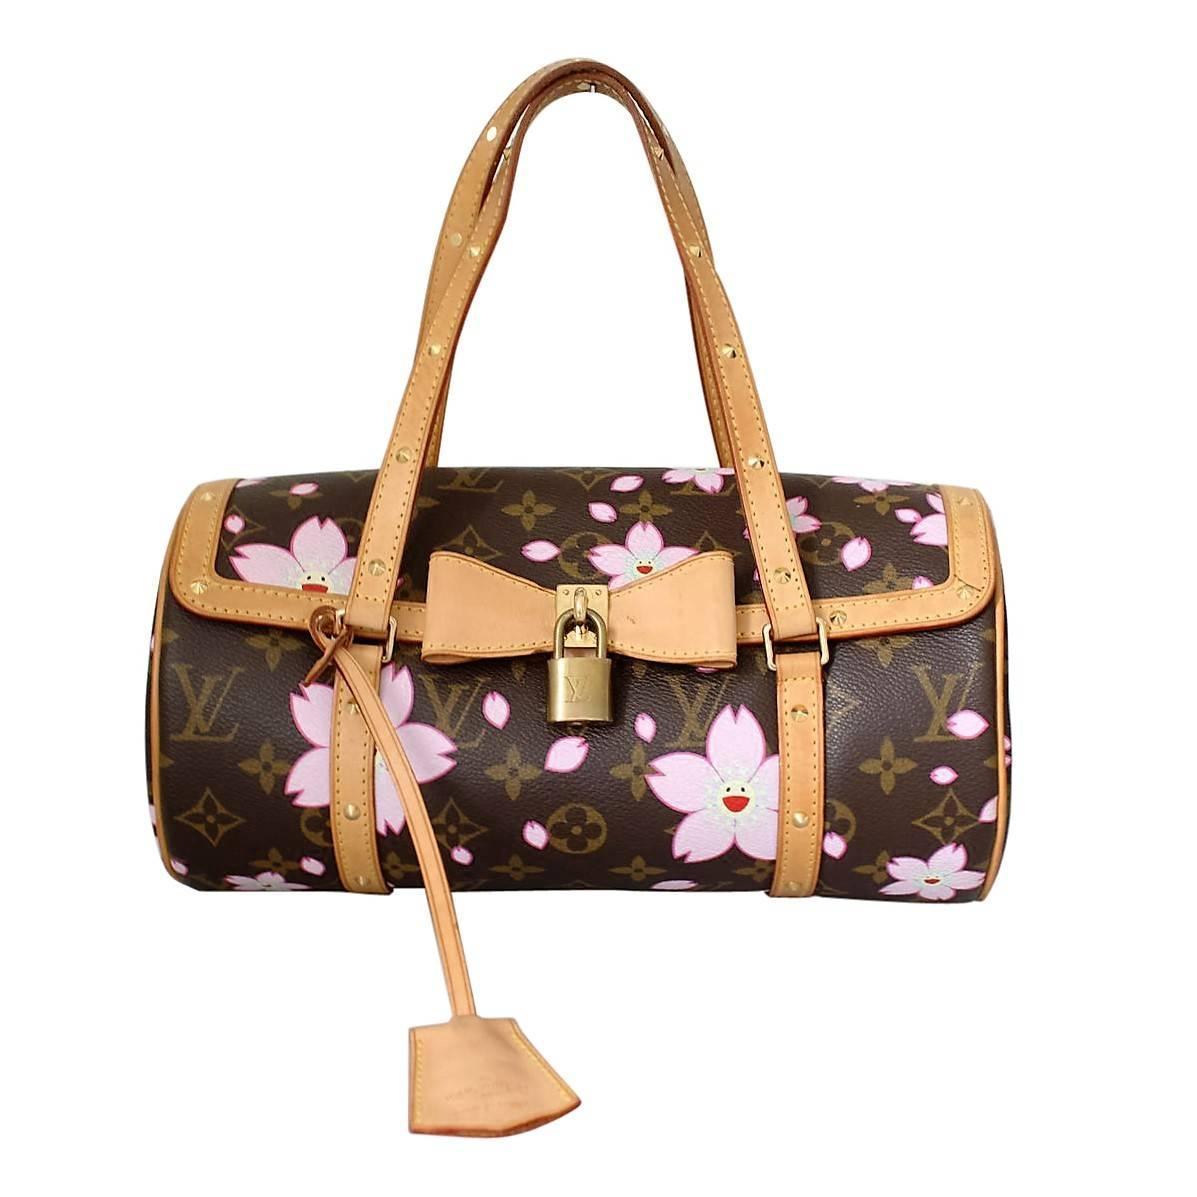 W2C Louis Vuitton x Murakami Cherry Blossom Papillon? : r/RepladiesDesigner